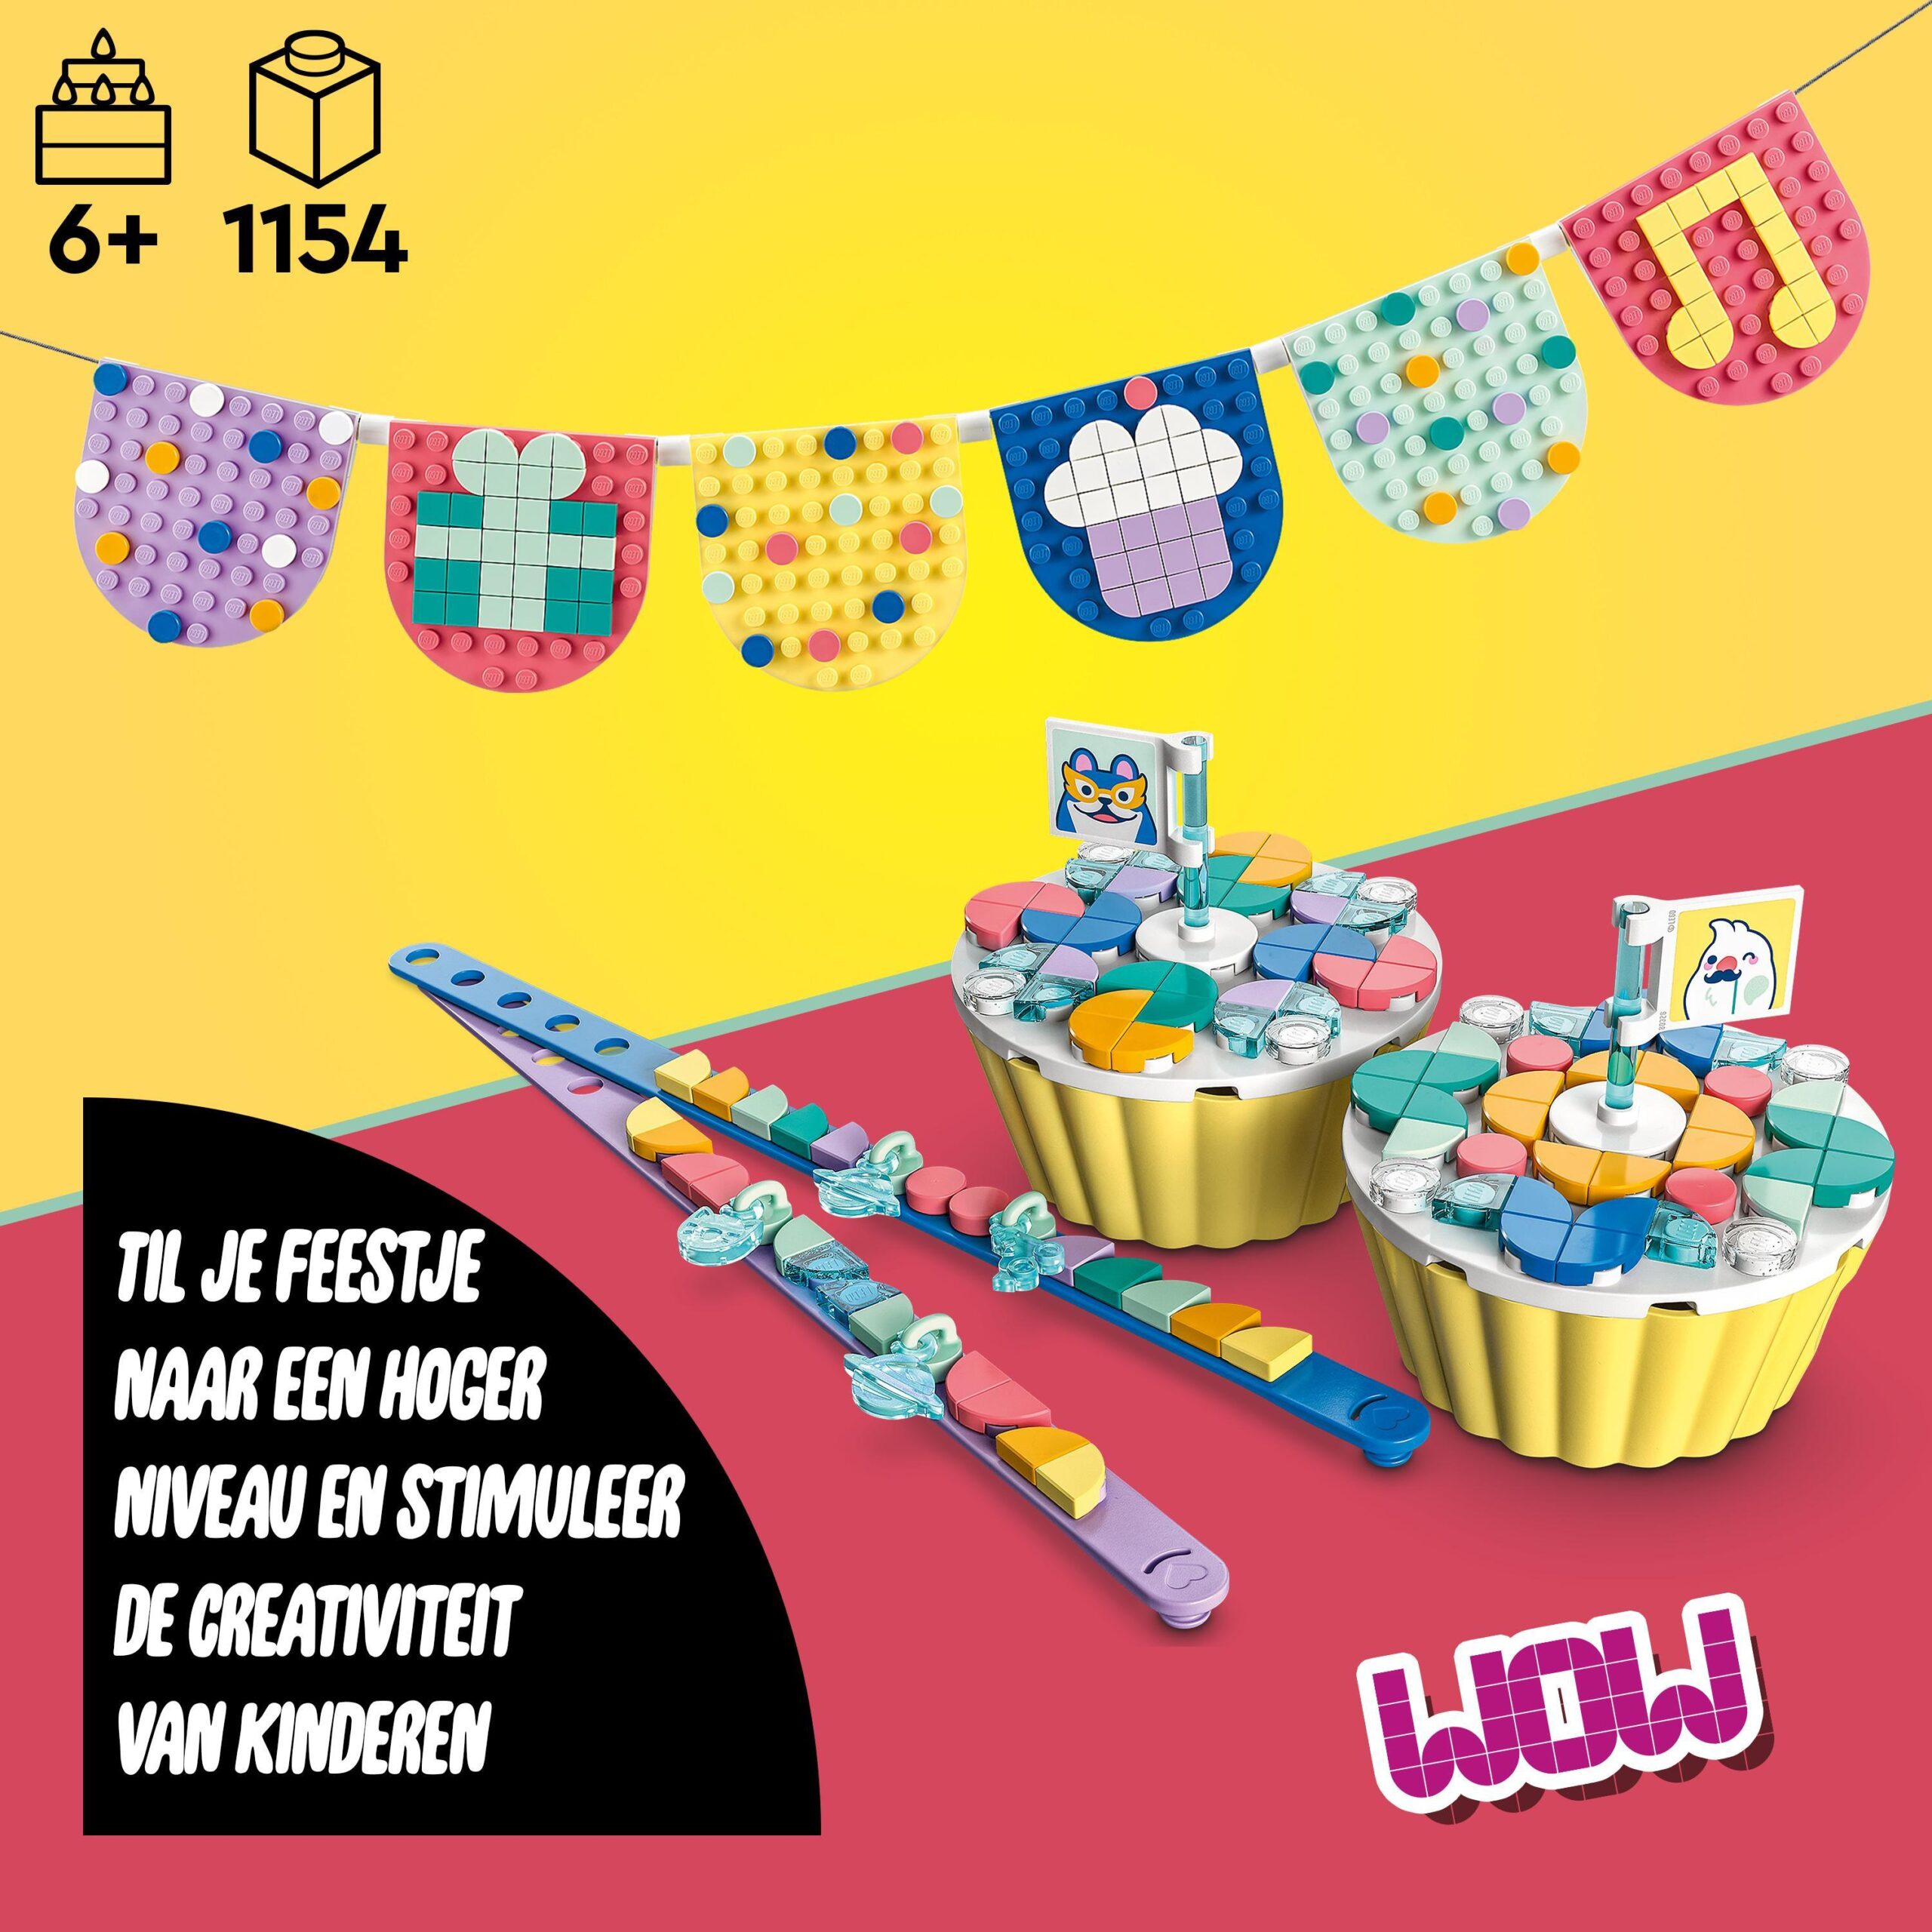 Lego dots 41806 grande kit per le feste, giochi festa compleanno bambini  fai da te con cupcake, braccialetti e festoni - Toys Center